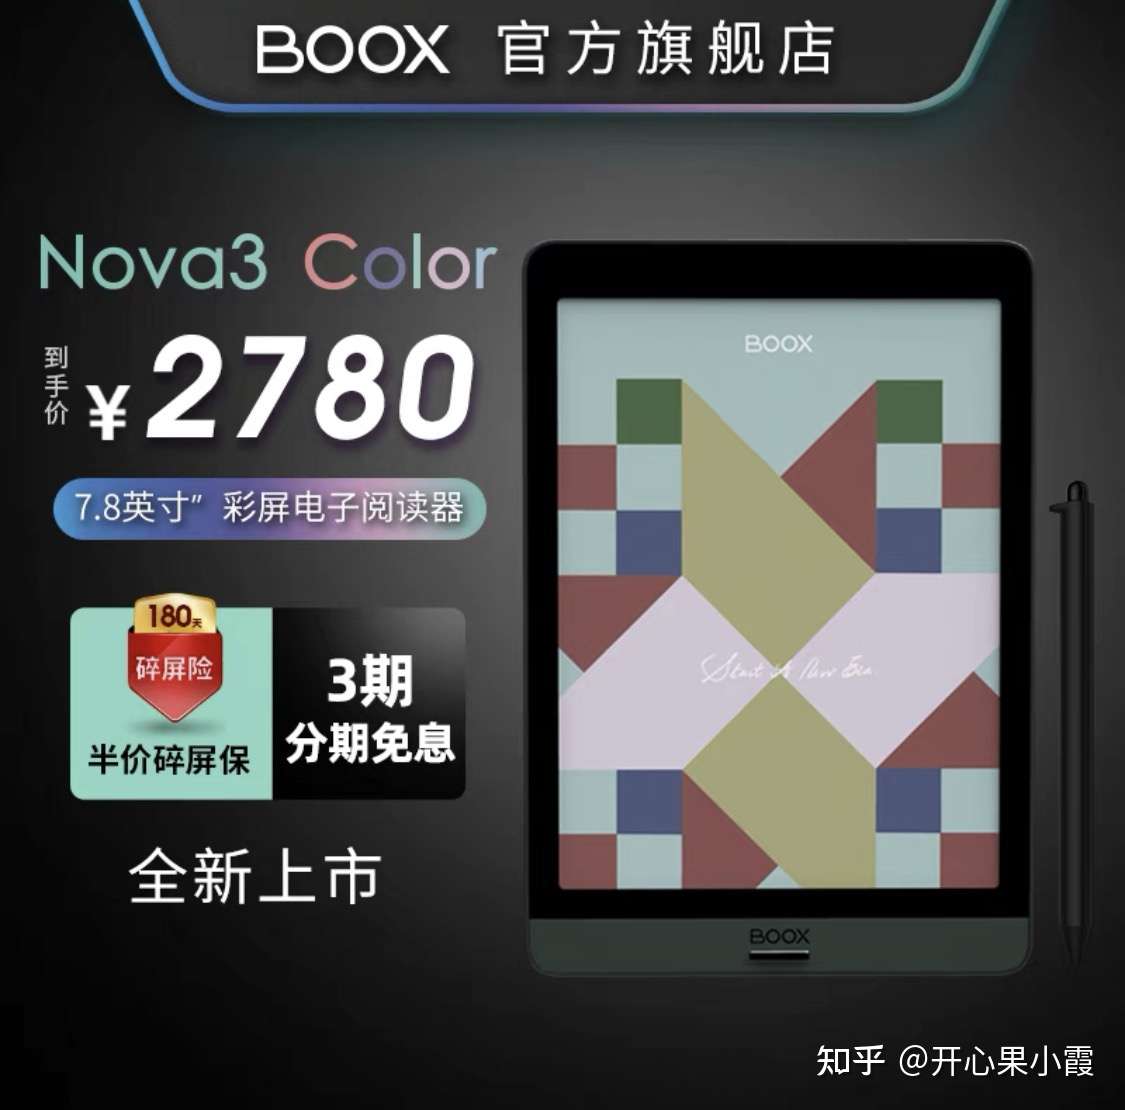 文石BOOX Nova 3 Color彩色墨水屏阅读器与其它彩色墨水屏电子阅读器的显示效果对比及一些使用小心得分享等- 知乎